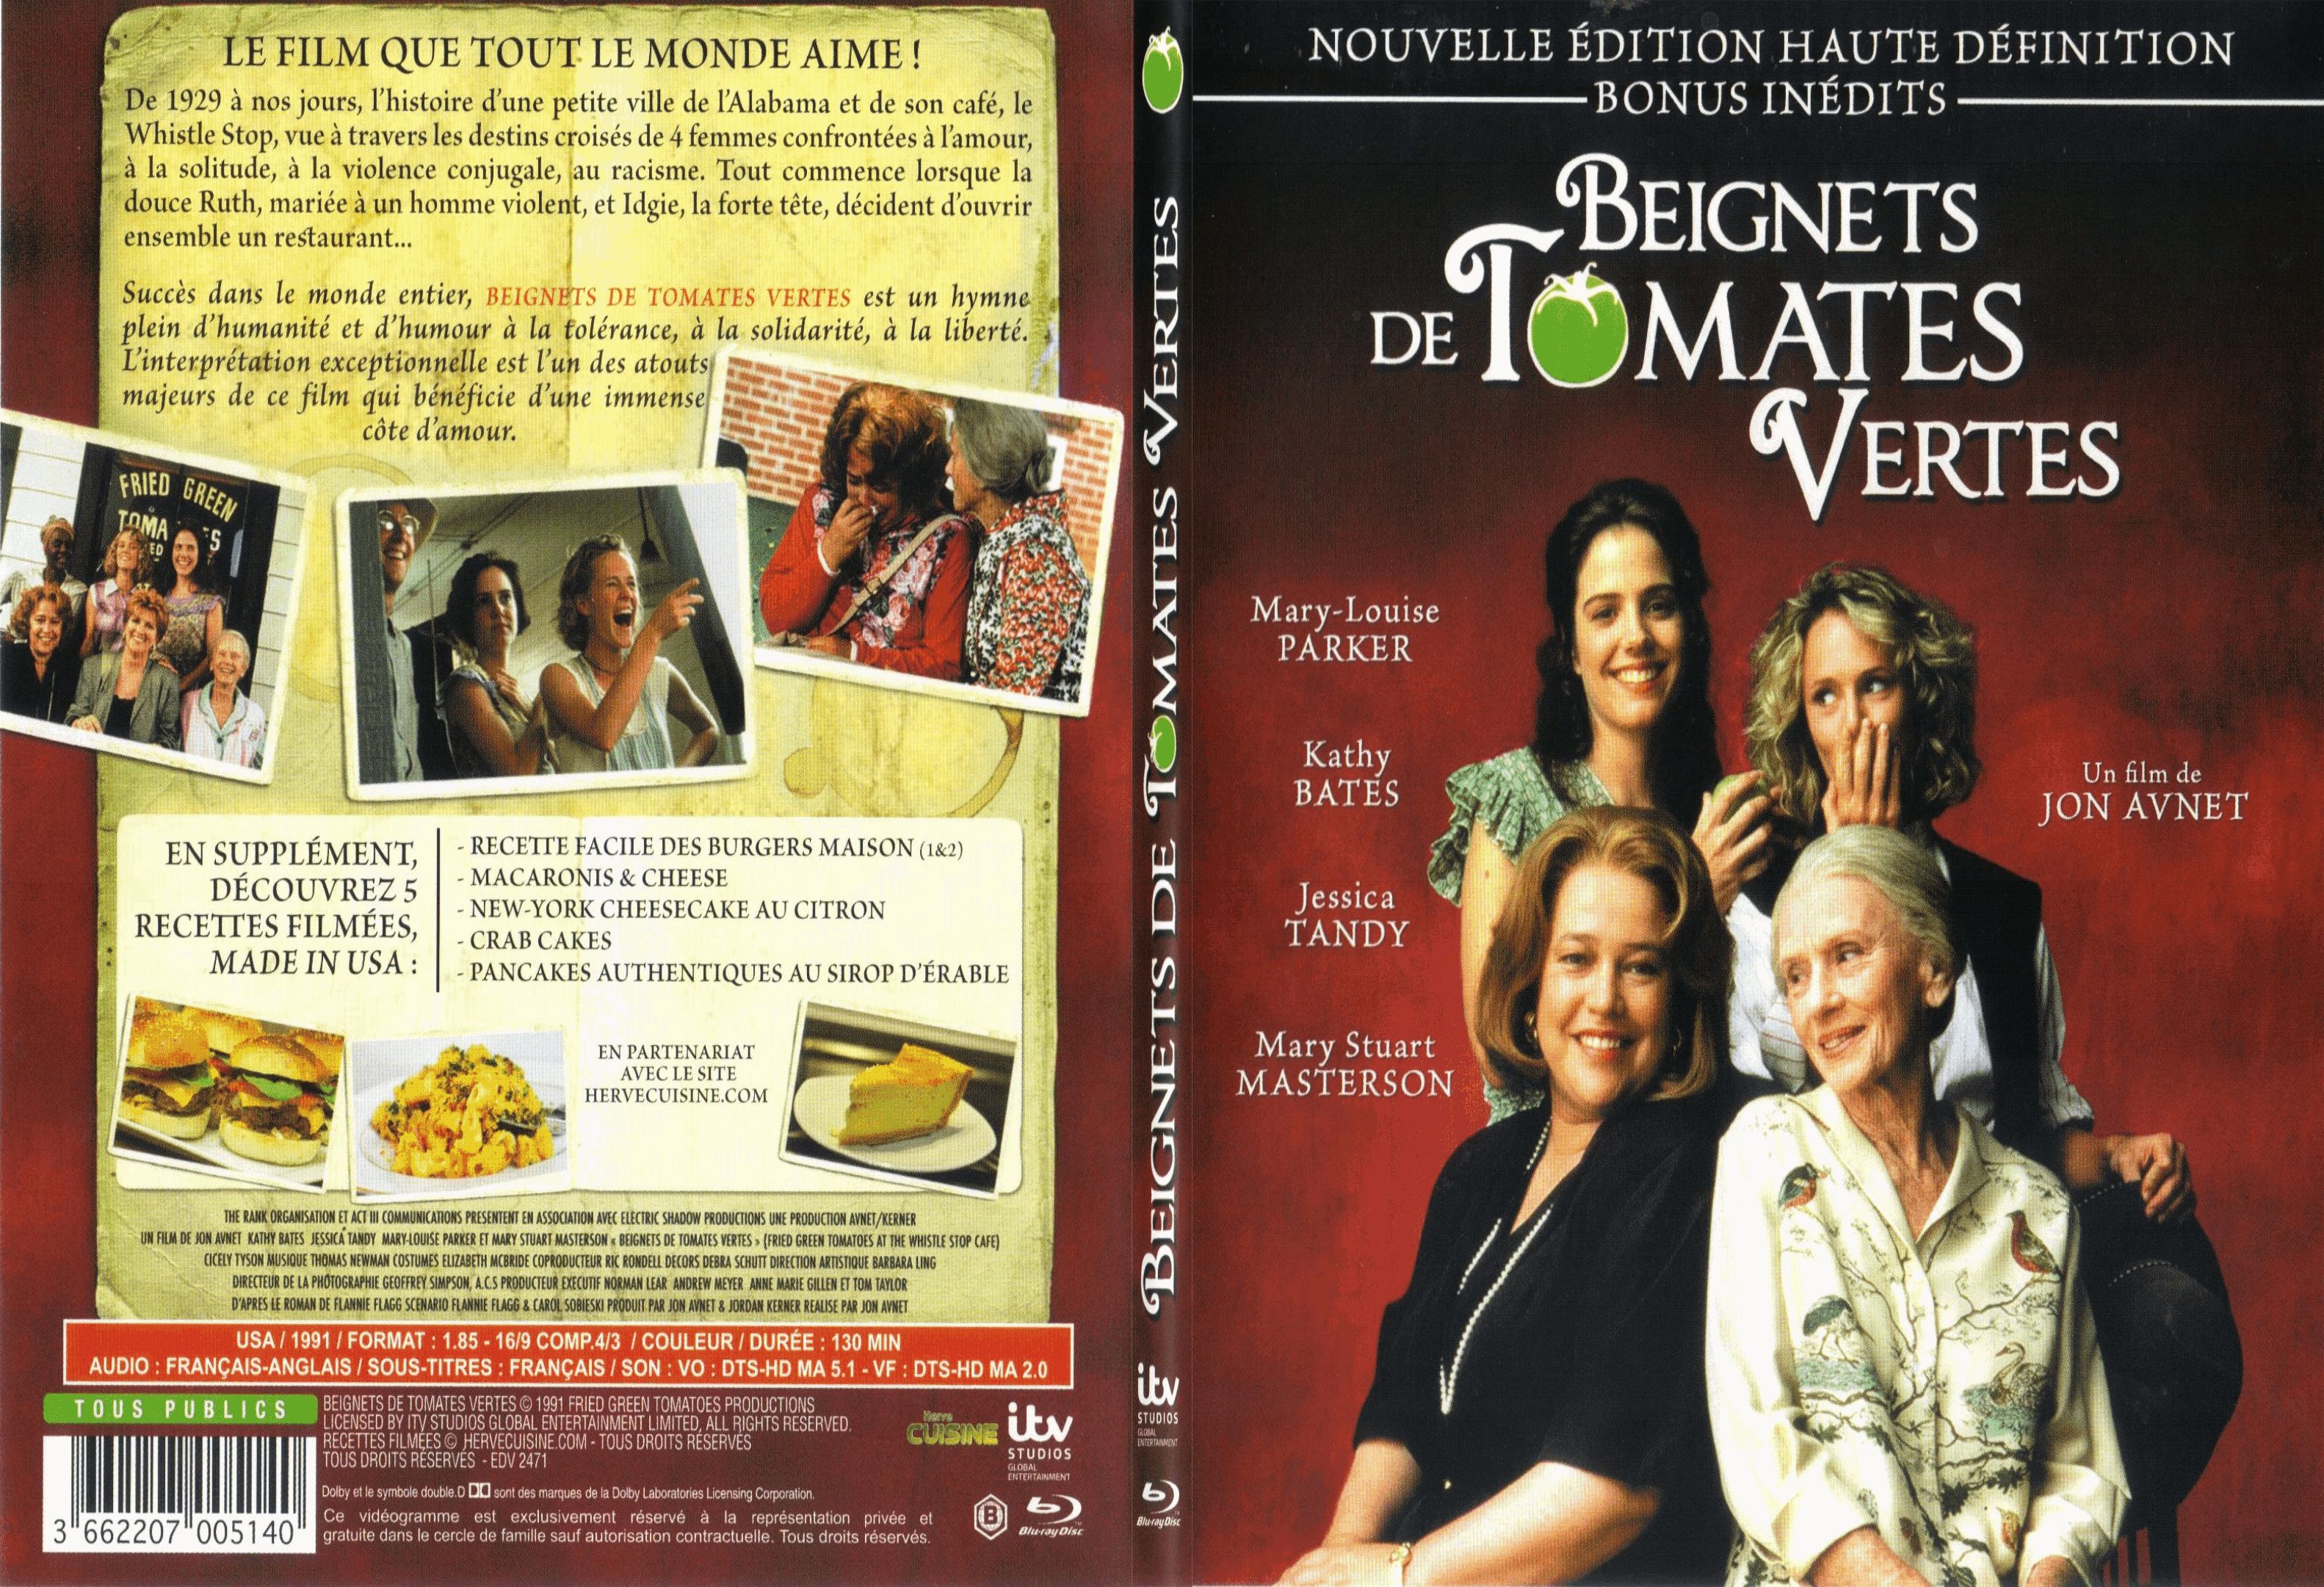 Jaquette DVD Beignets de tomates vertes - SLIM